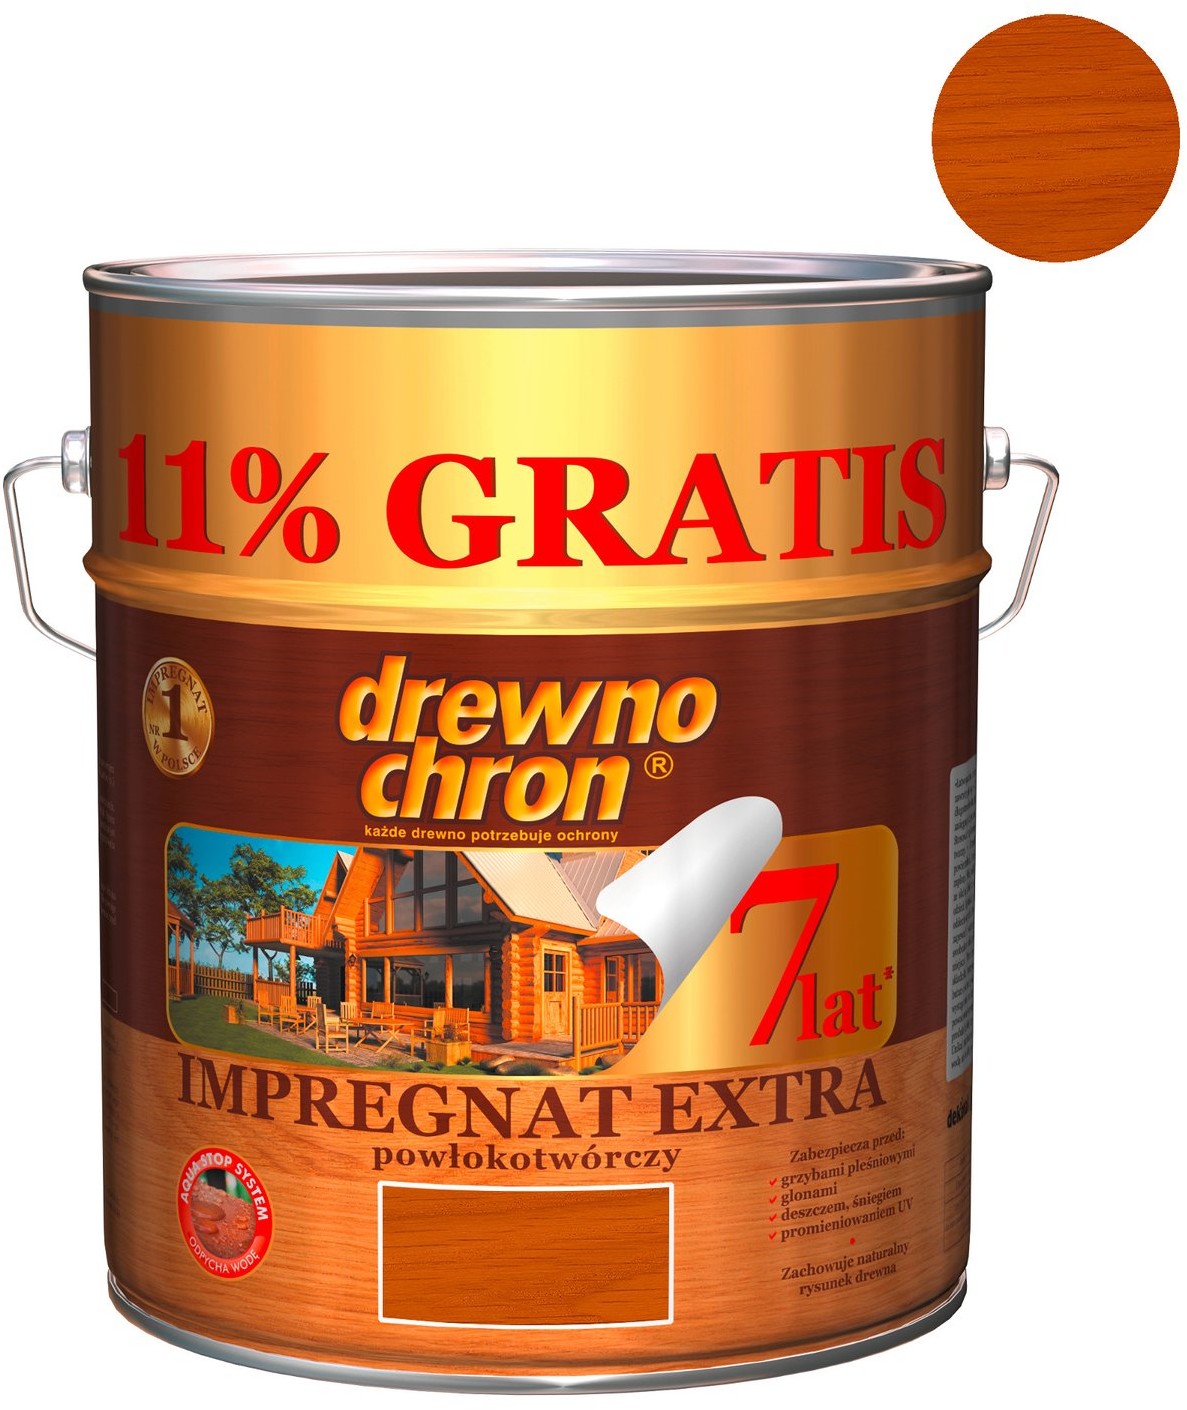 Drewnochron Impregnat Extra powłokotwórczy 11 proc. GRATIS dąb 10 l